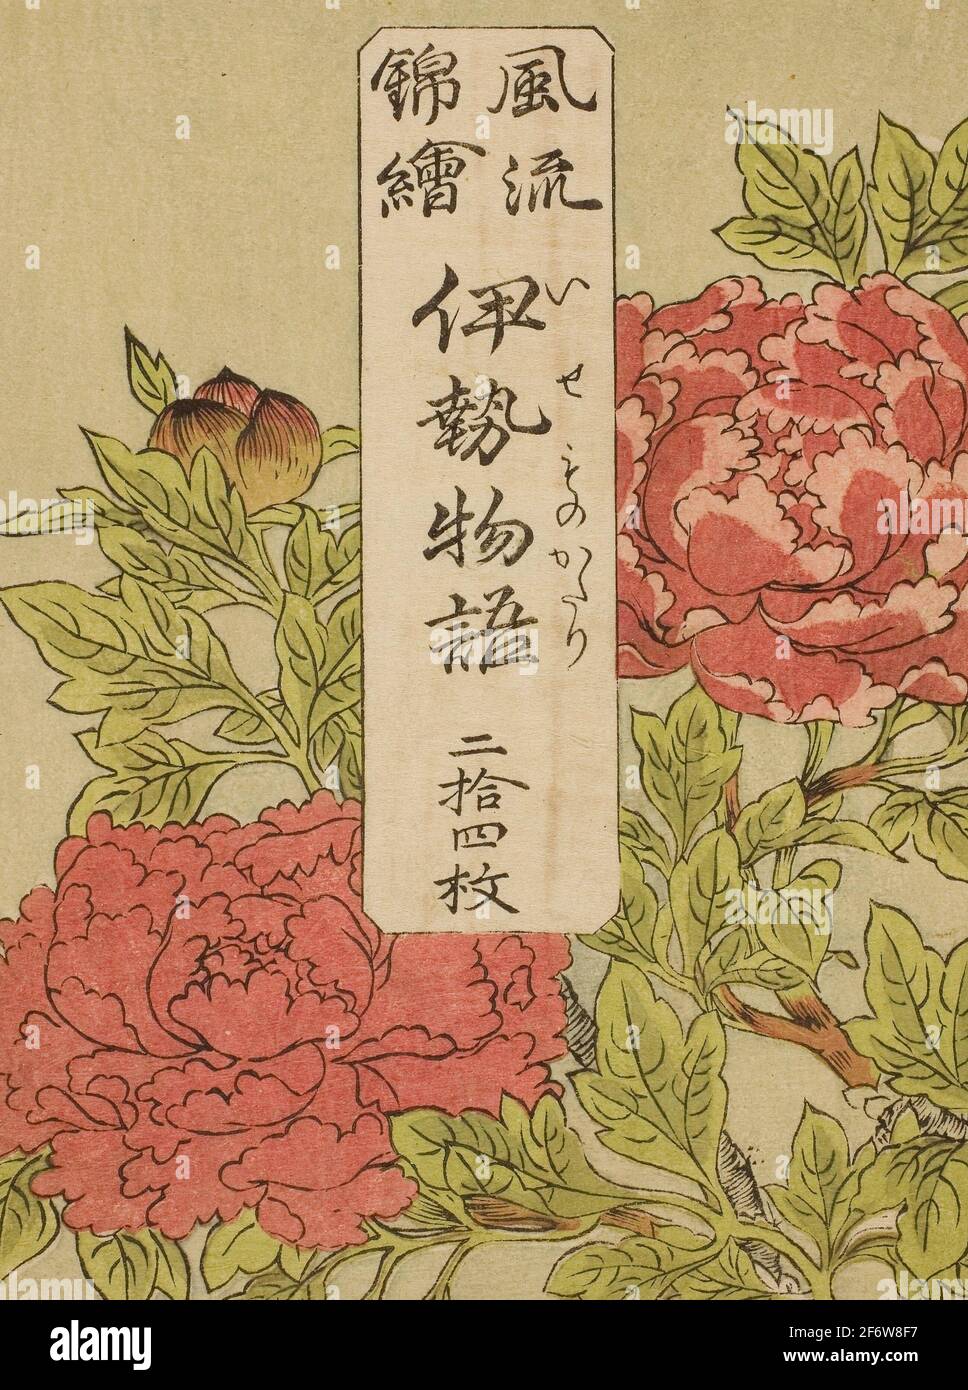 Autor: Katsukawa Shunsho. Envoltorio impreso en color para la serie - - Furyu Nishiki-e Ise Monogatori - - - c. 1772/73 - Katsukawa Shunsho < ~ Japonés, Foto de stock